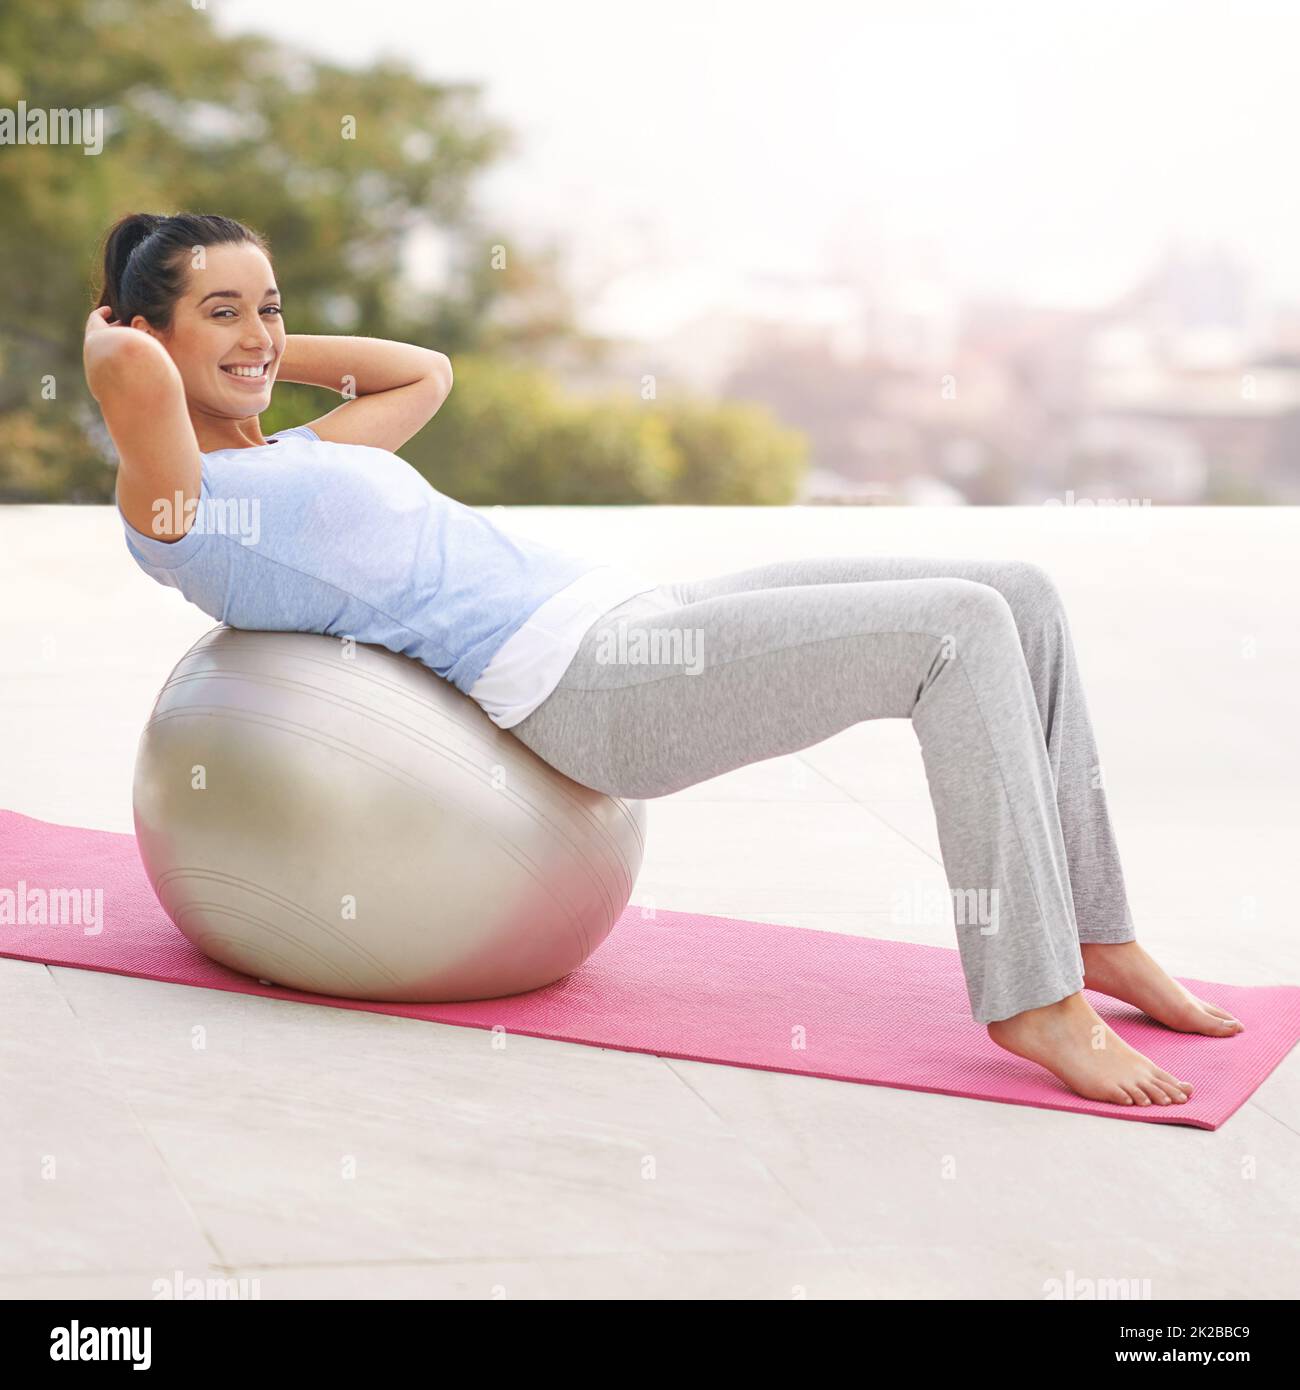 Corps ajusté, esprit heureux. Portrait complet d'une jeune femme faisant du yoga à l'extérieur. Banque D'Images